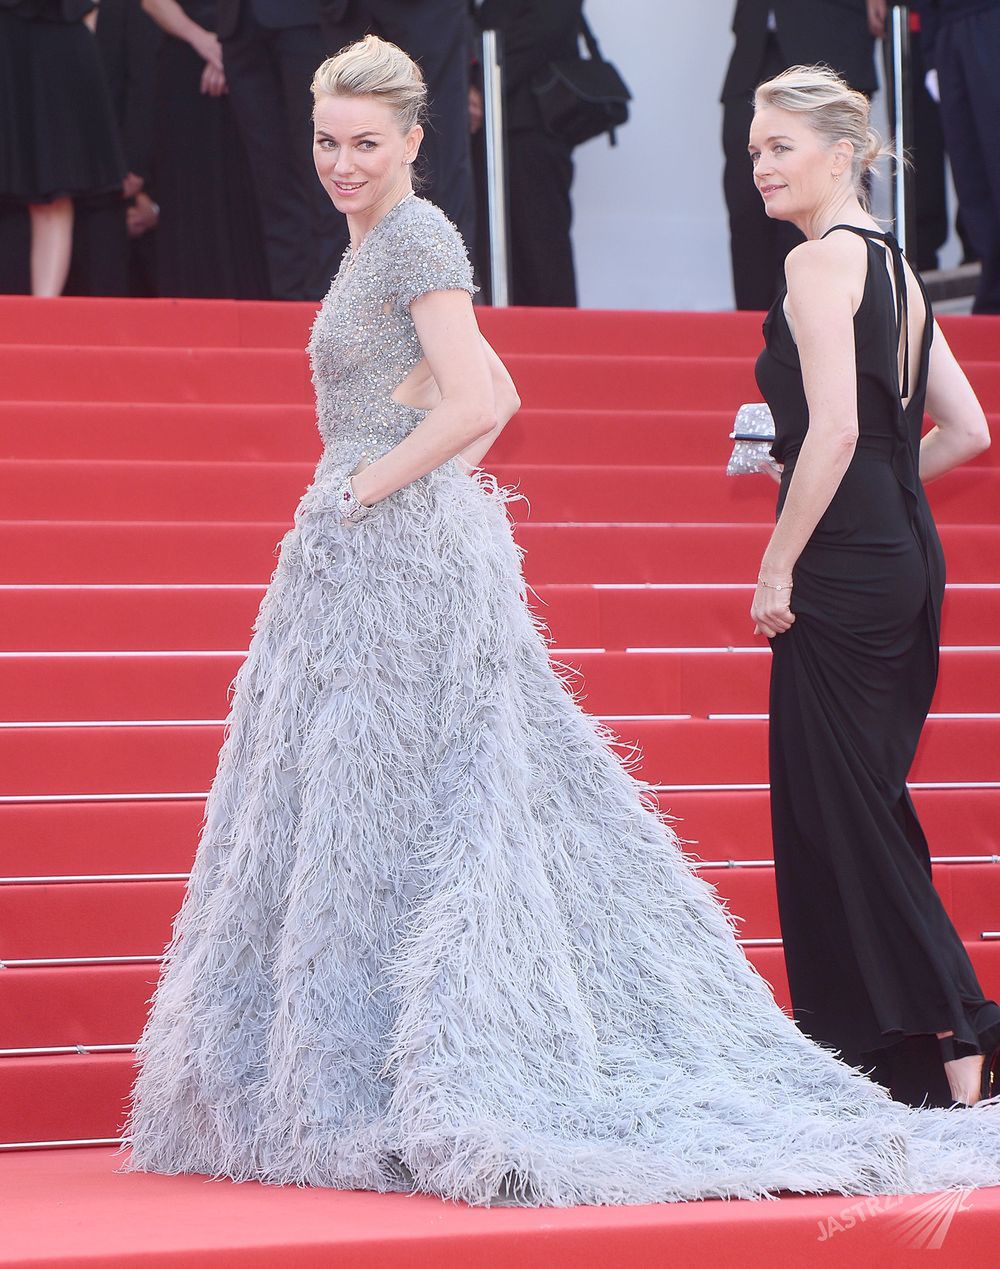 Naomi Watts w kreacji Elie Saab, Cannes 2015
Fot. ons